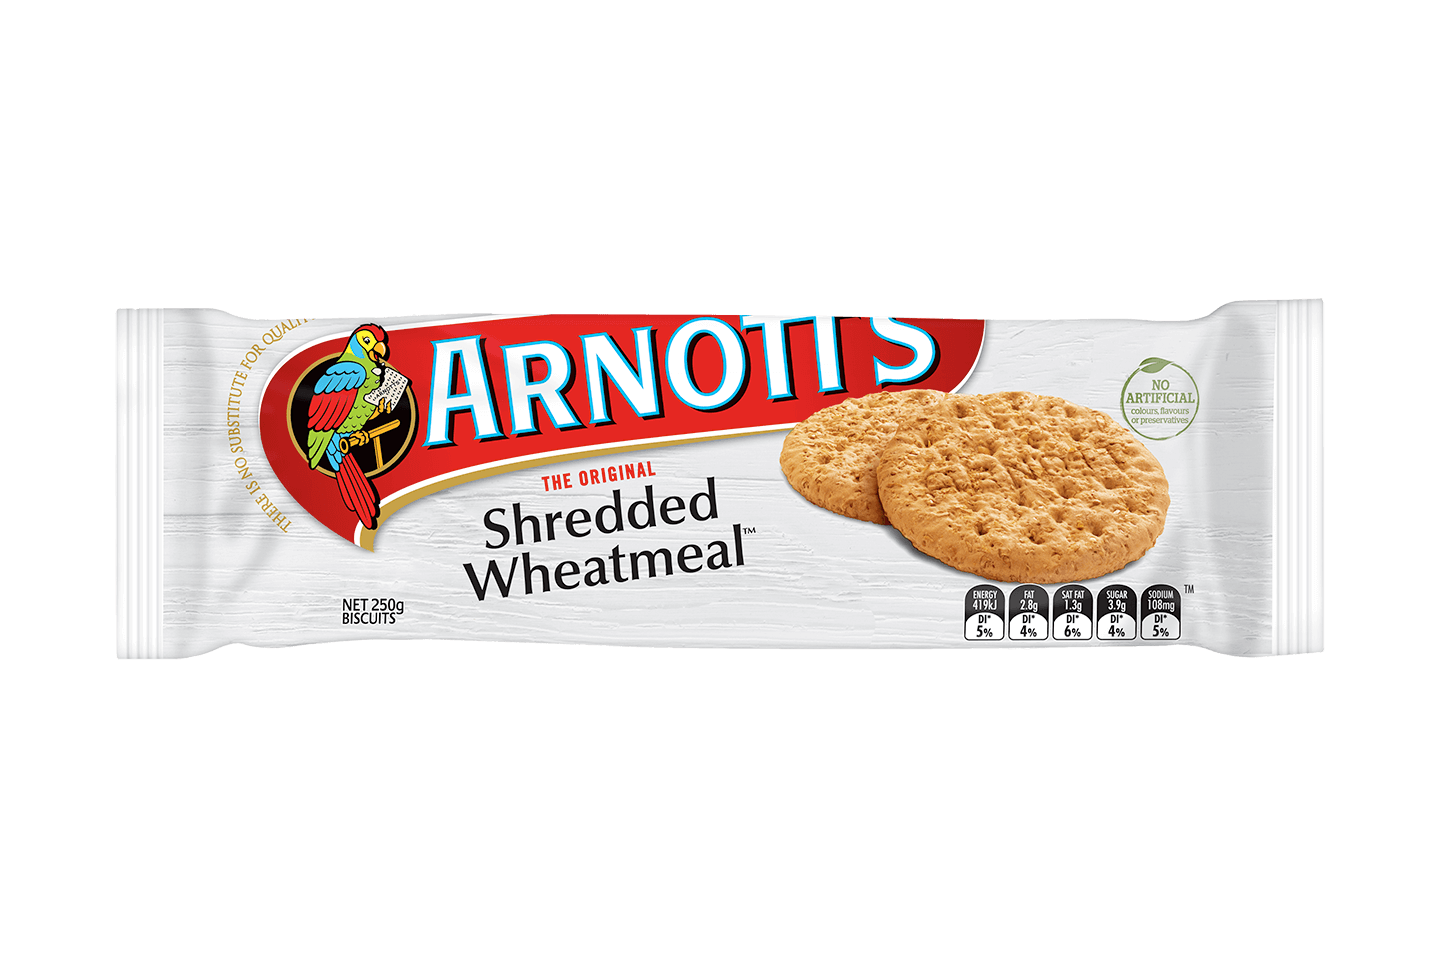 Shredded Wheatmeal